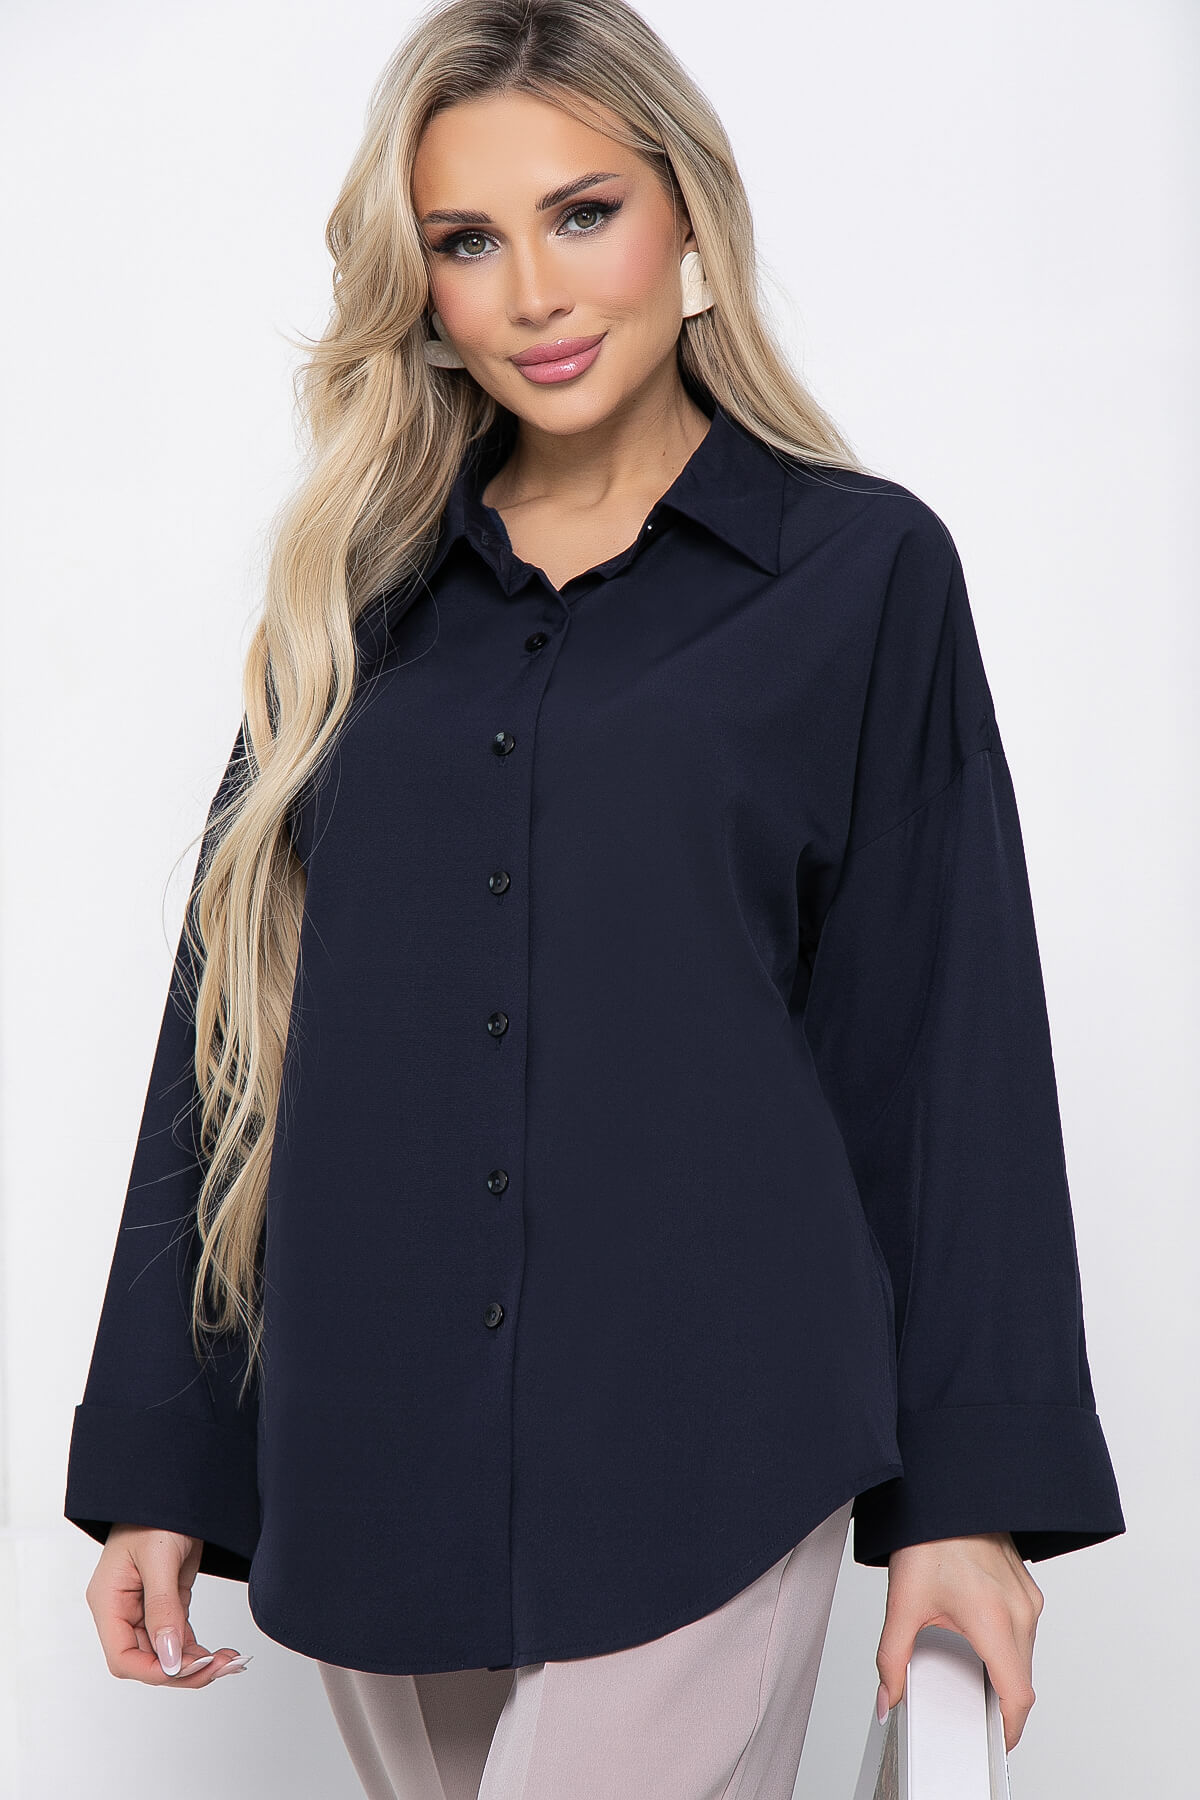 Рубашка женская LT Collection Каталина синяя 50 RU